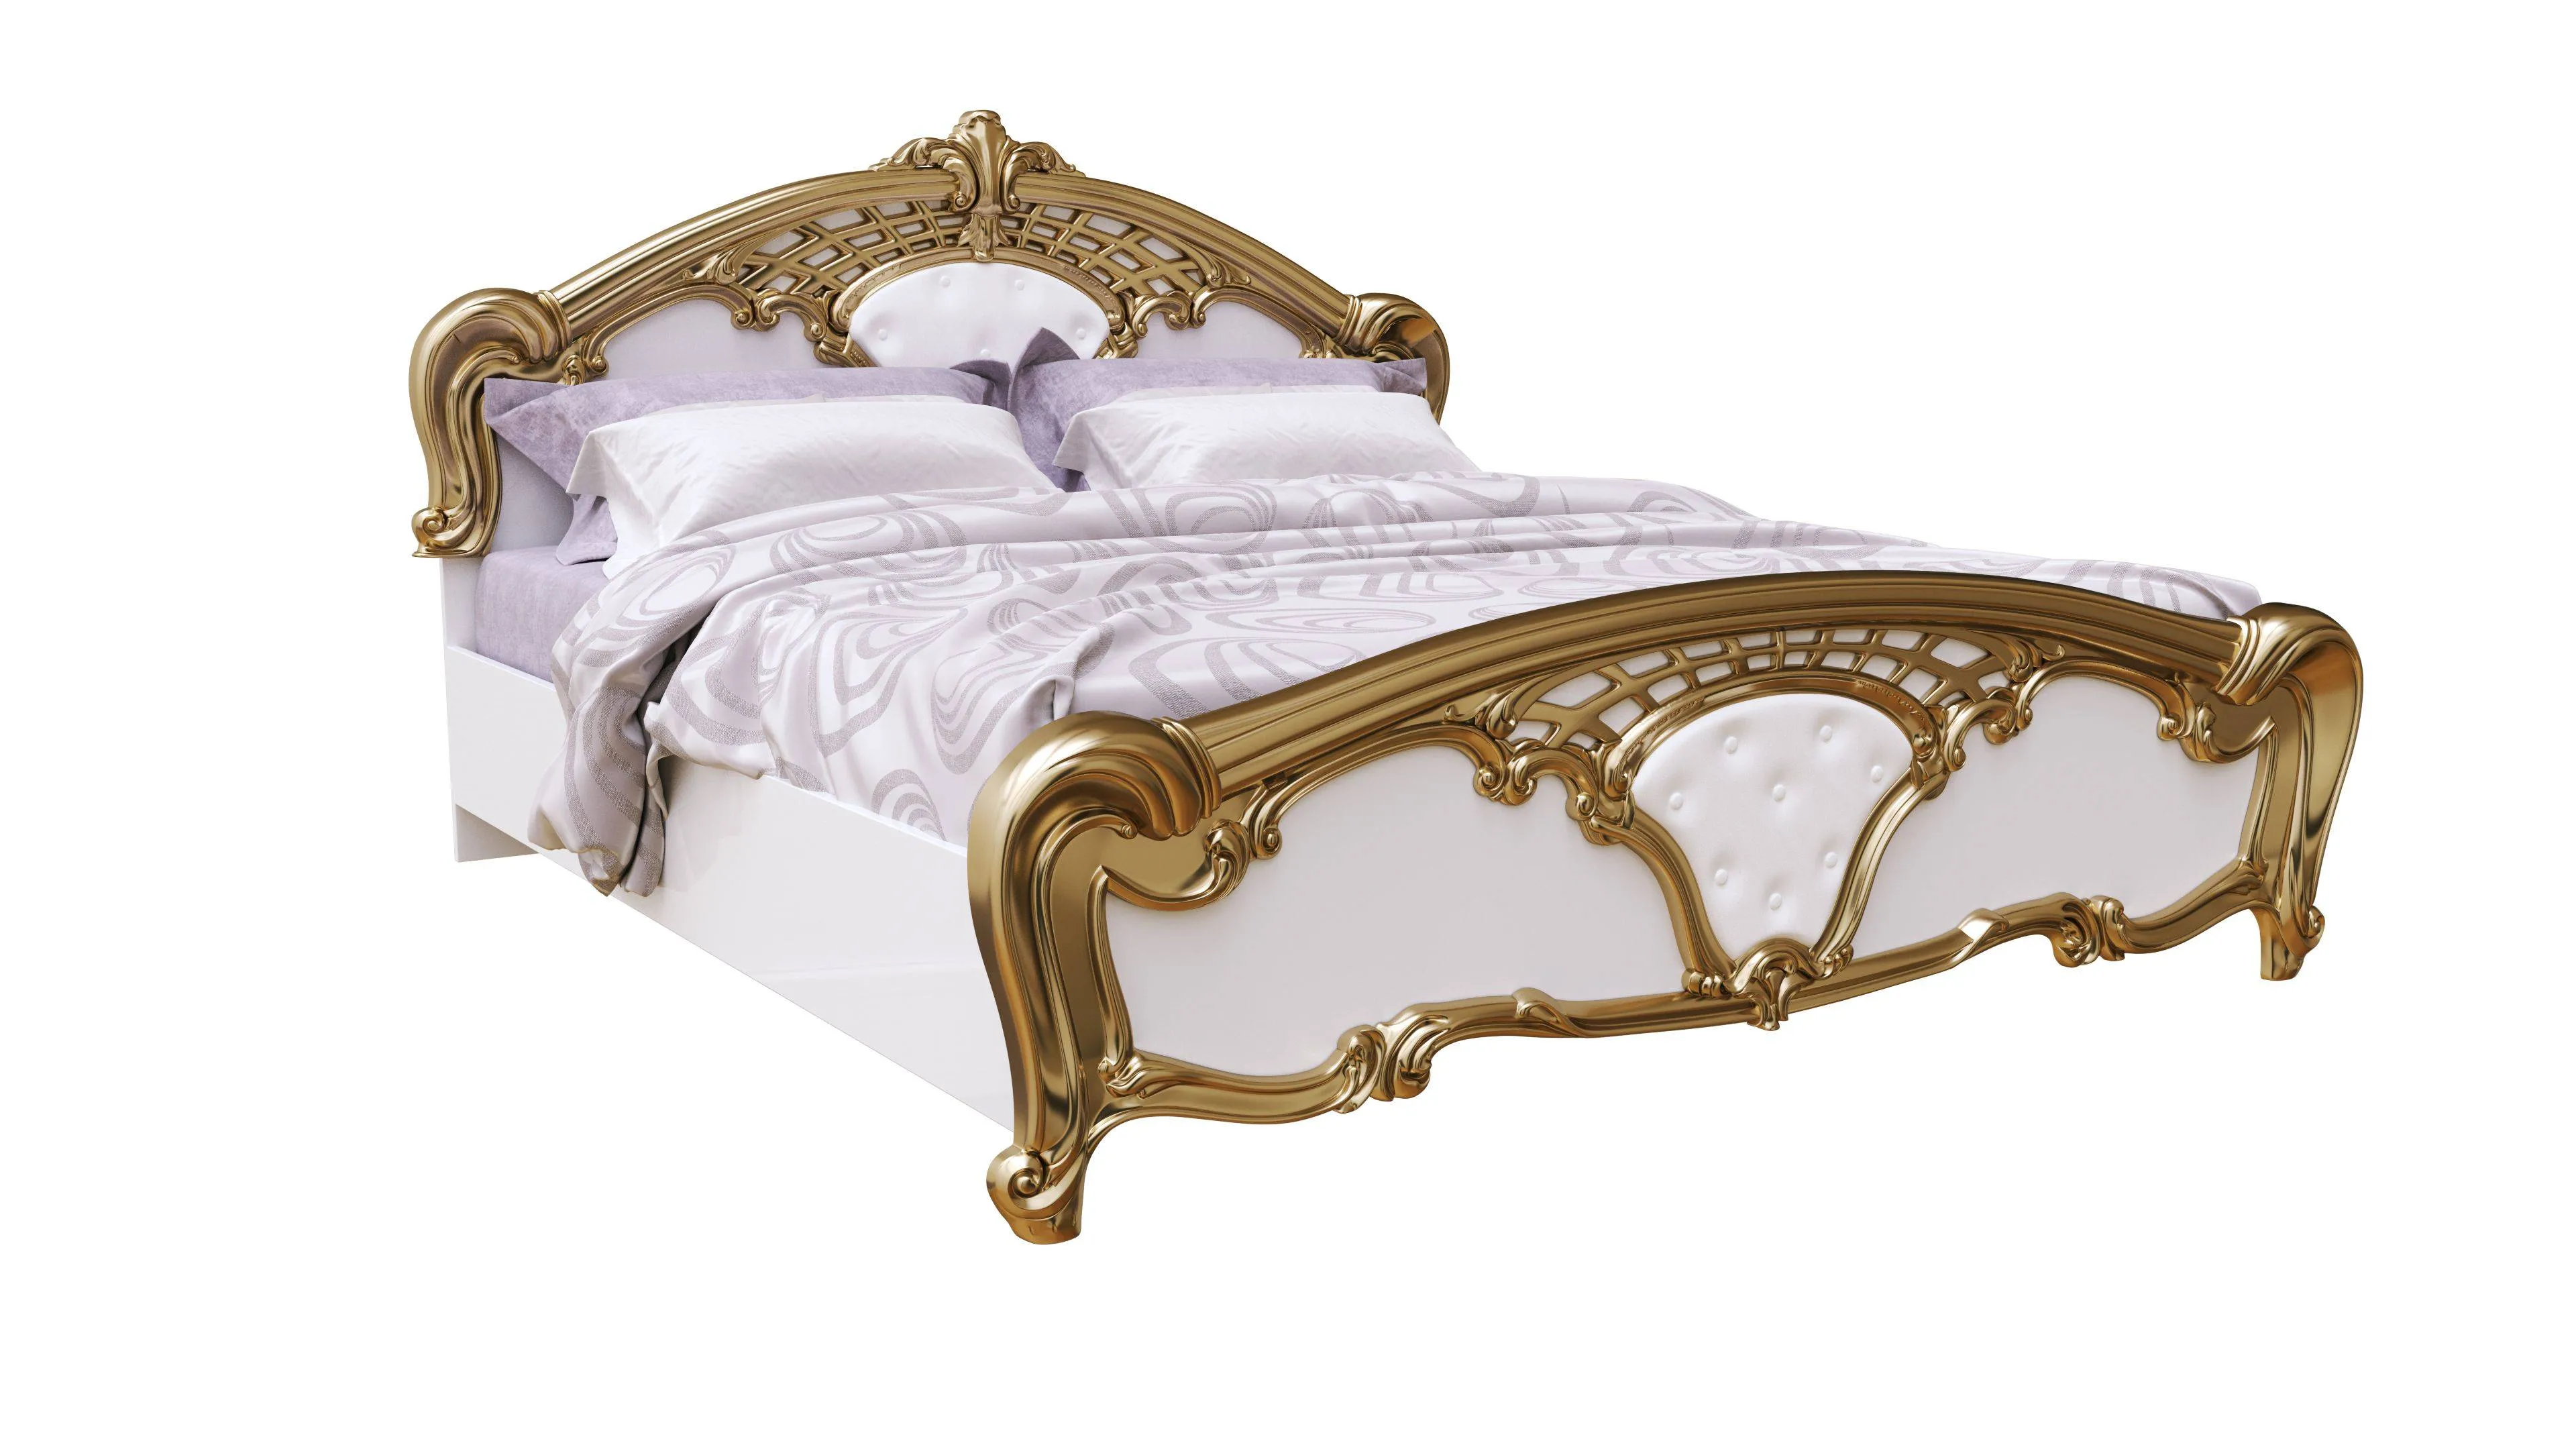 Eva łóżko 1,8 z pojemnikiem biel złoto - Biel złoto' title='Eva łóżko 1,8 z pojemnikiem biel złoto